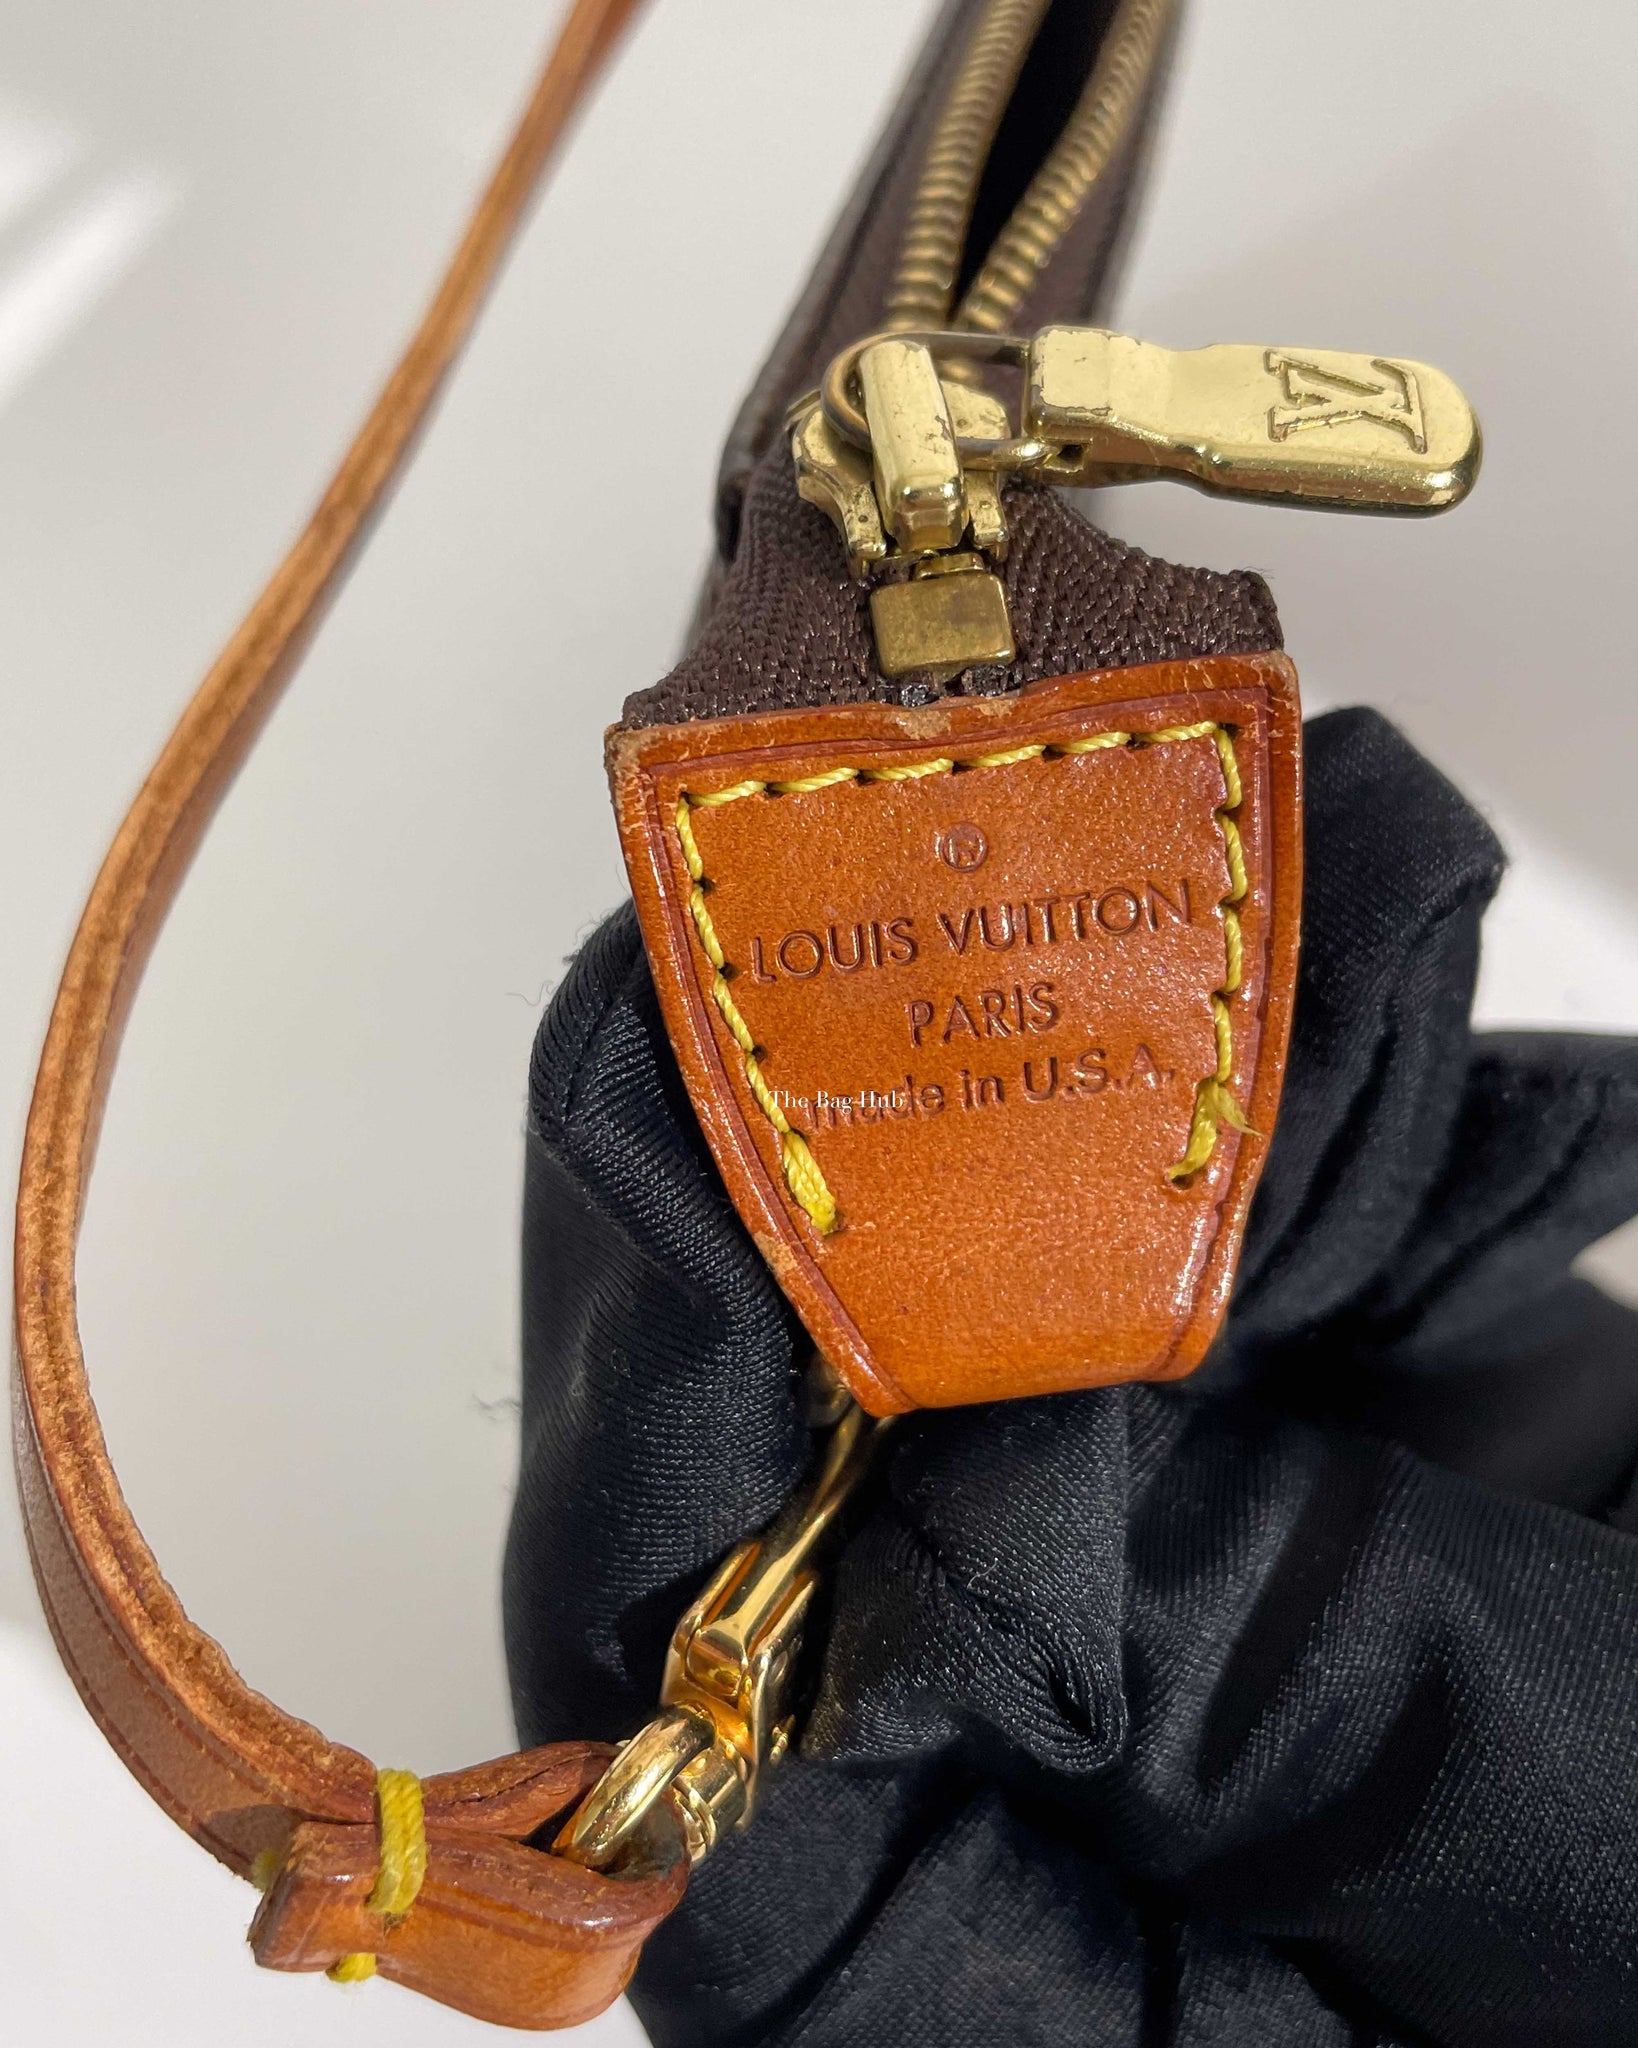 Pochette accessoire leather handbag Louis Vuitton Black in Leather -  25699413